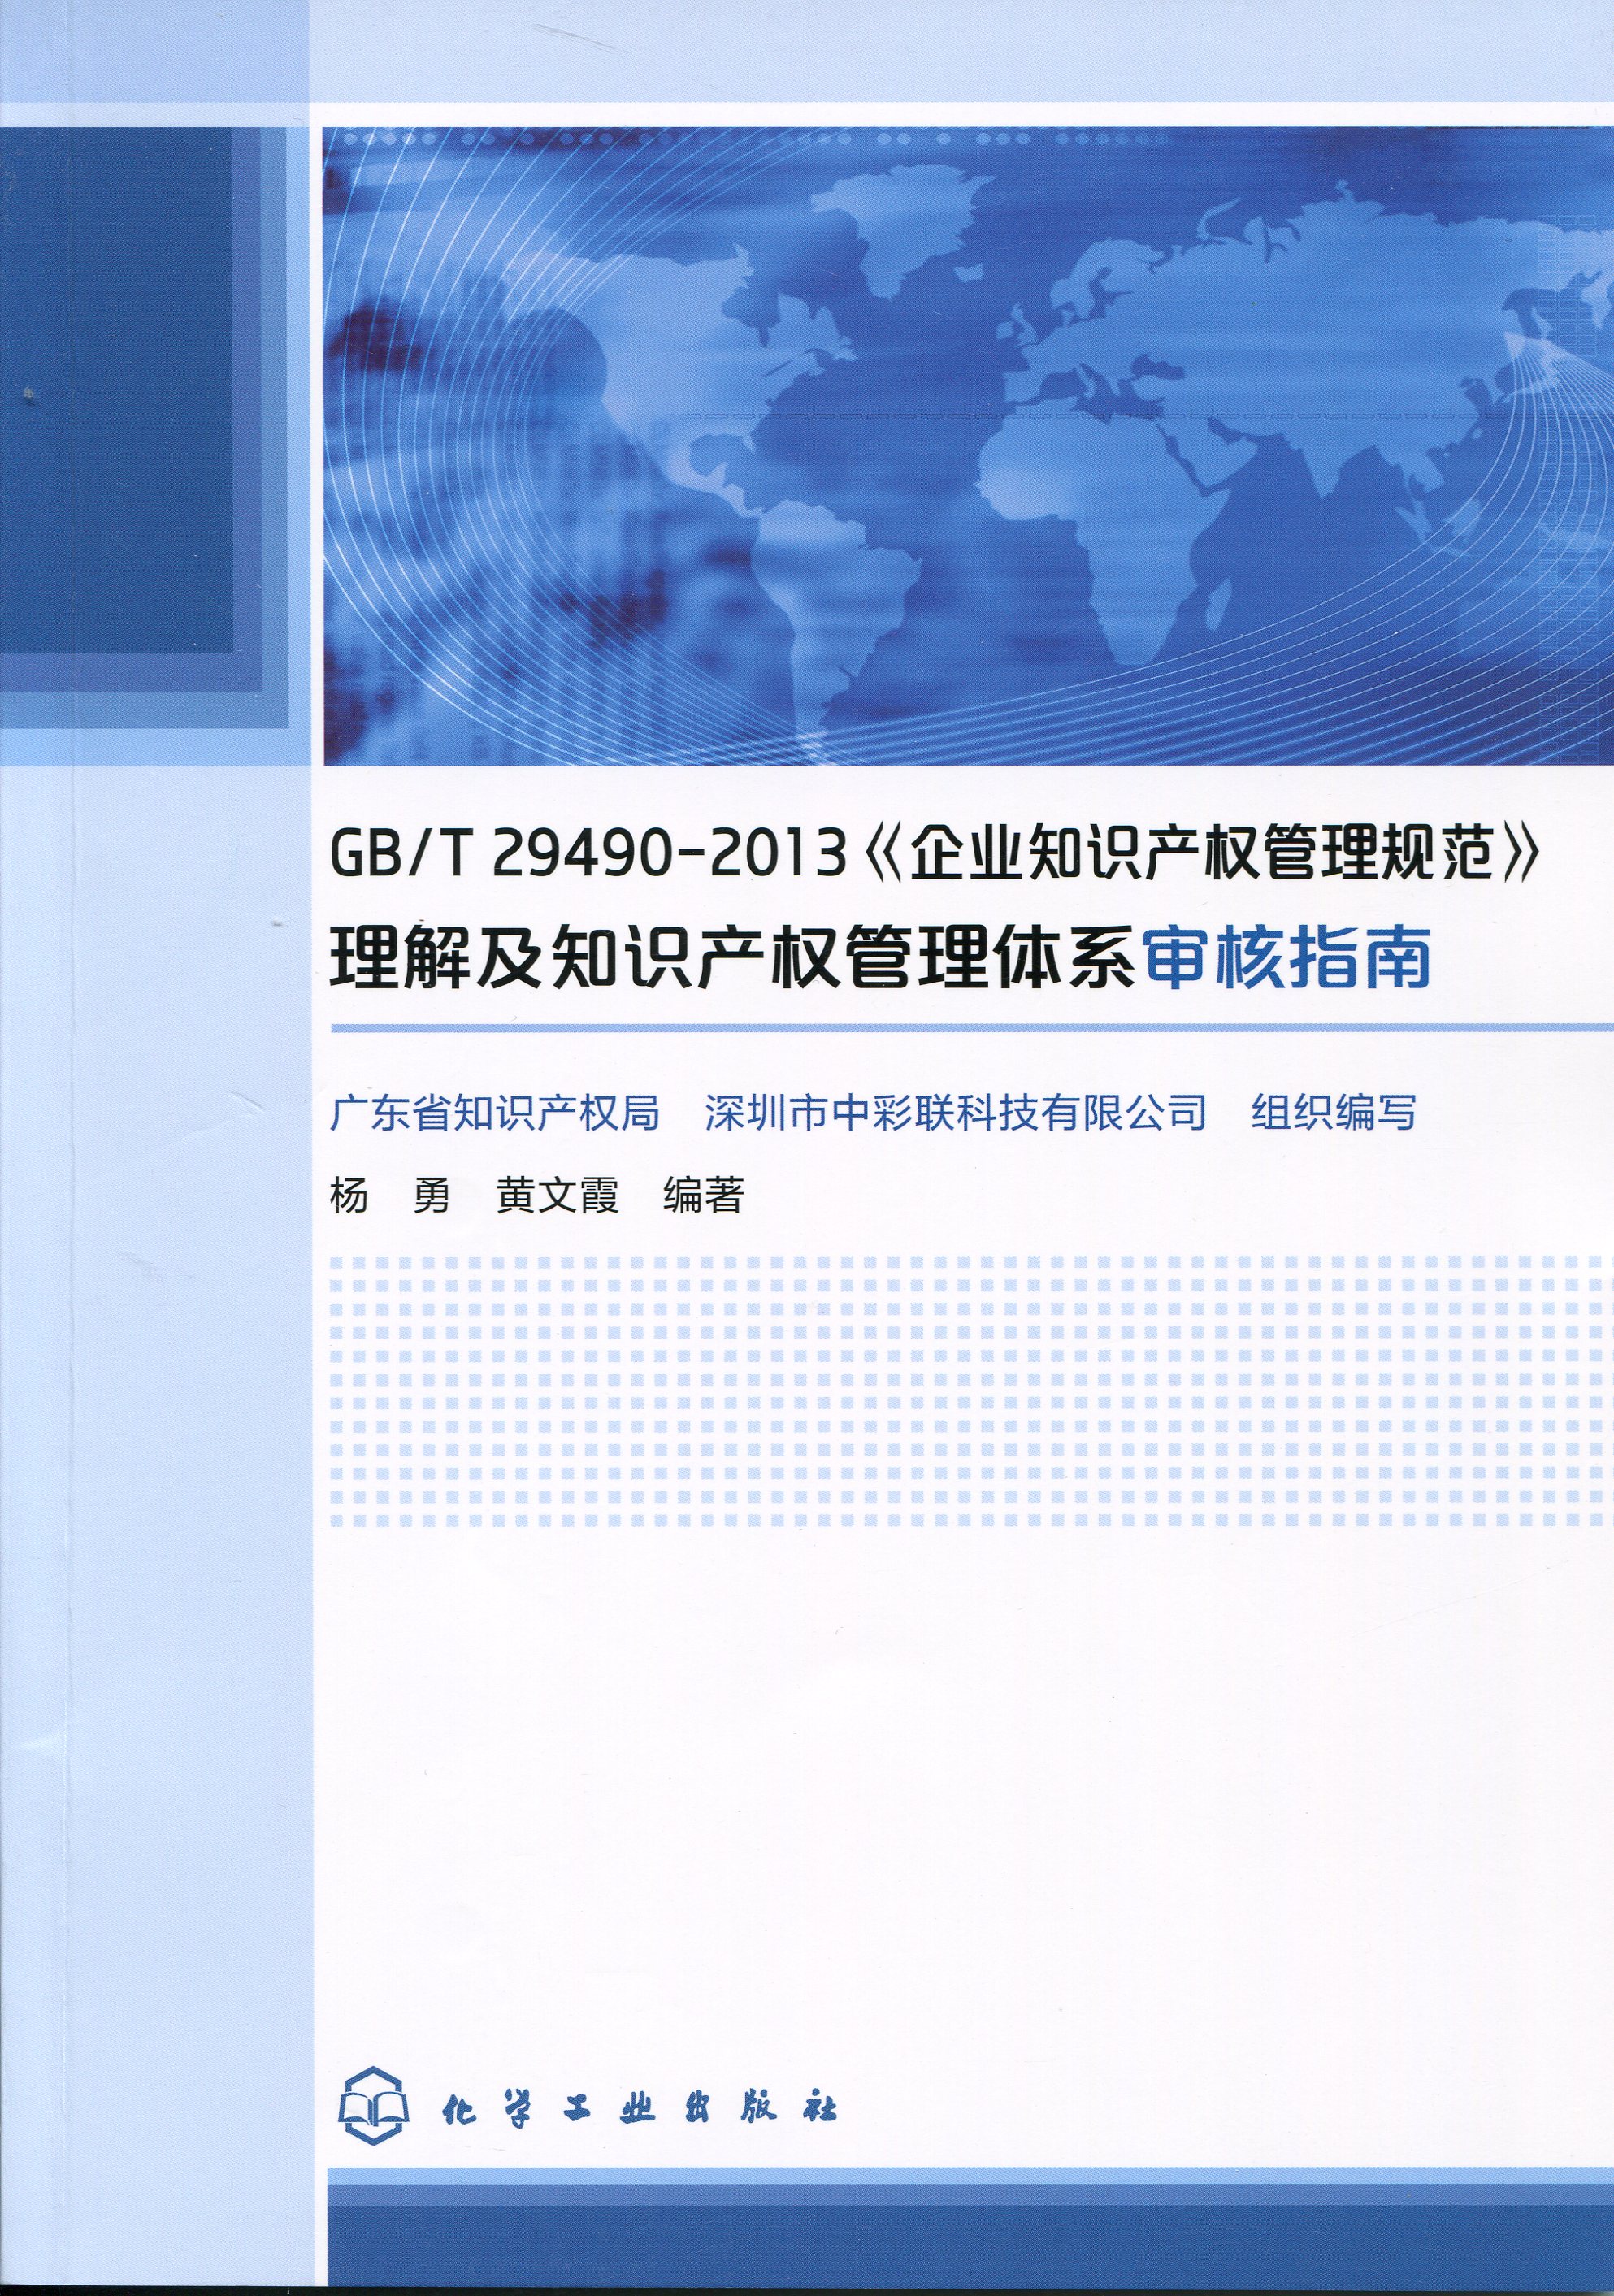 GB/T29490-2013《企业知识产权管理规范》理解及知识产权管理体系审核指南